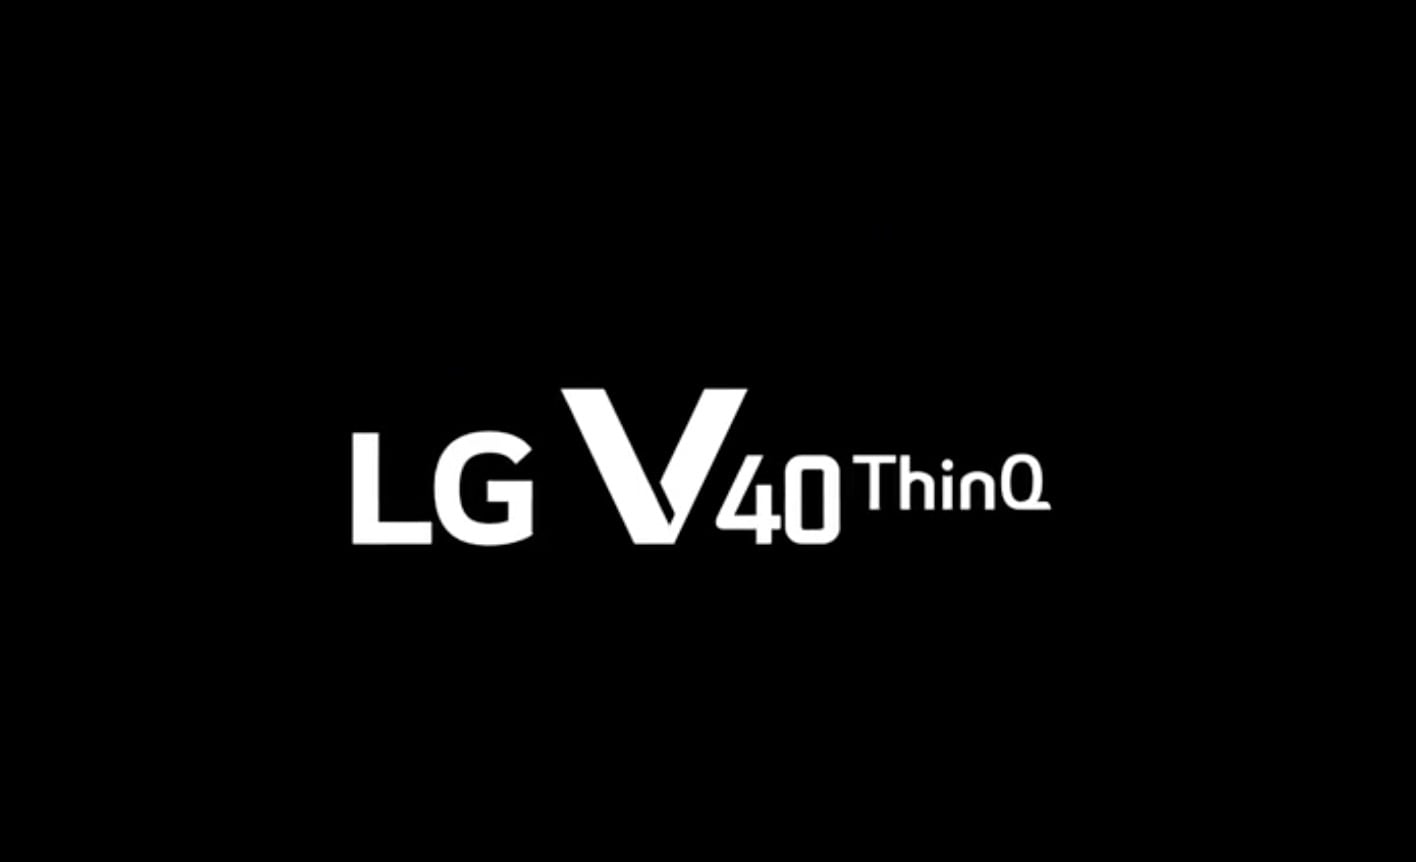 LG V40 ThinQ logo